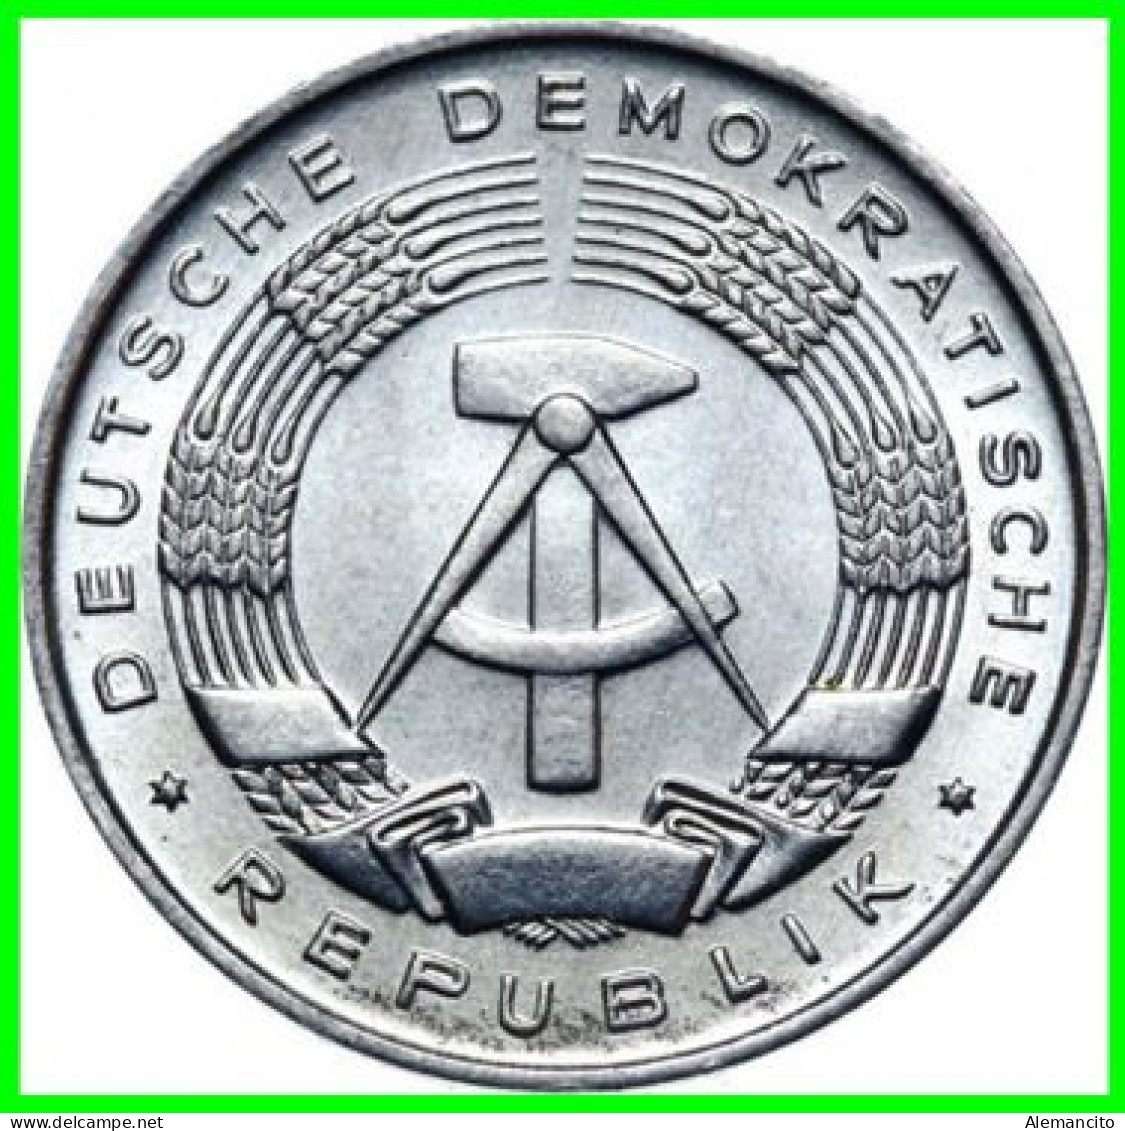 ( GERMANY ) REPUBLICA DEMOCRATICA DE ALEMANIA AÑO 1964 ( DDR ) MONEDAS DE 1 PFENNING  CECA-A  MONEDA DE ALUMINIO - 1 Pfennig